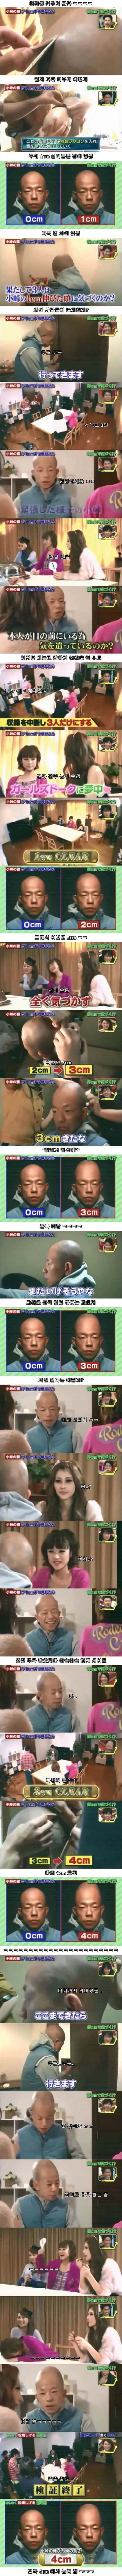 일본의 머리통키우기 몰카 | 인스티즈